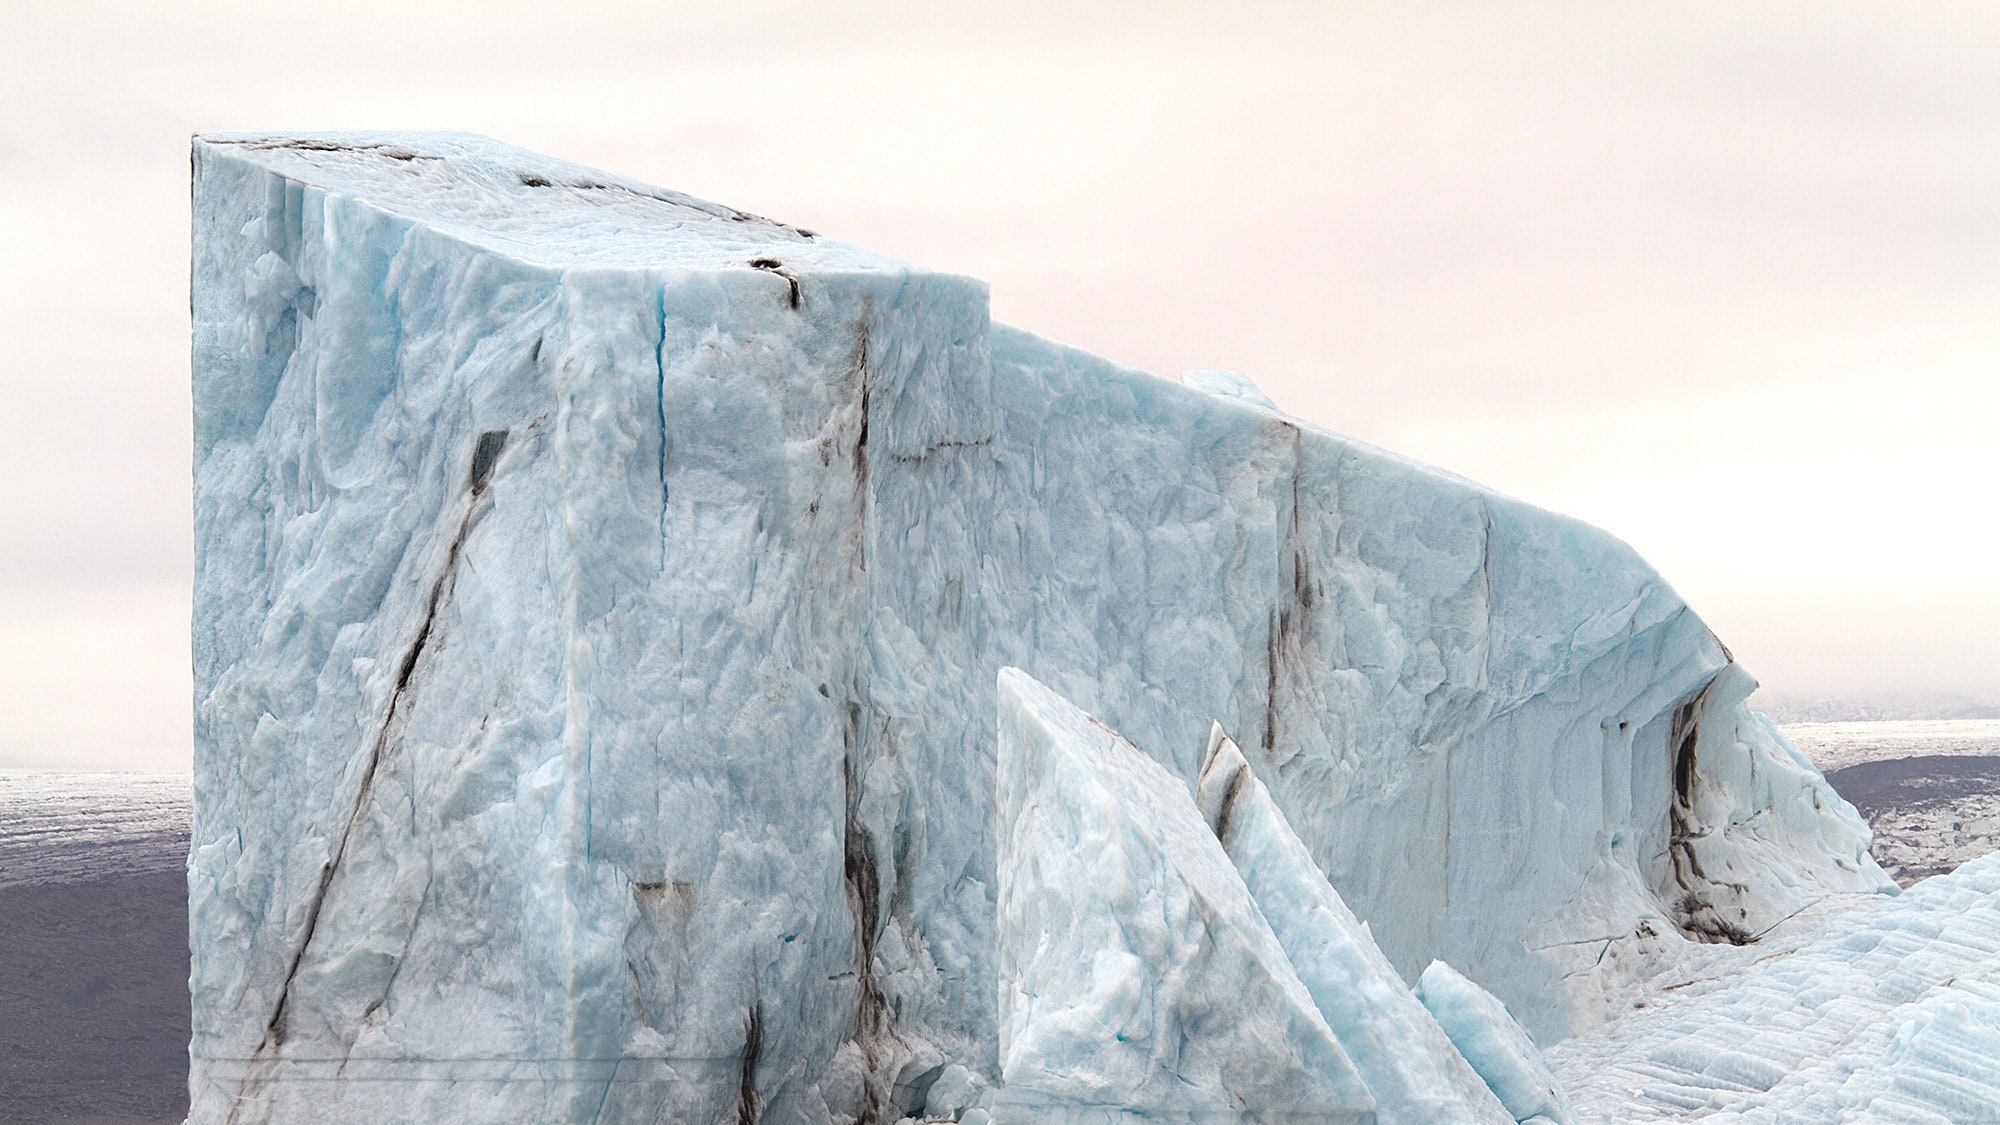 Архитектура айсбергов необычный фотопроект Уго Ливе